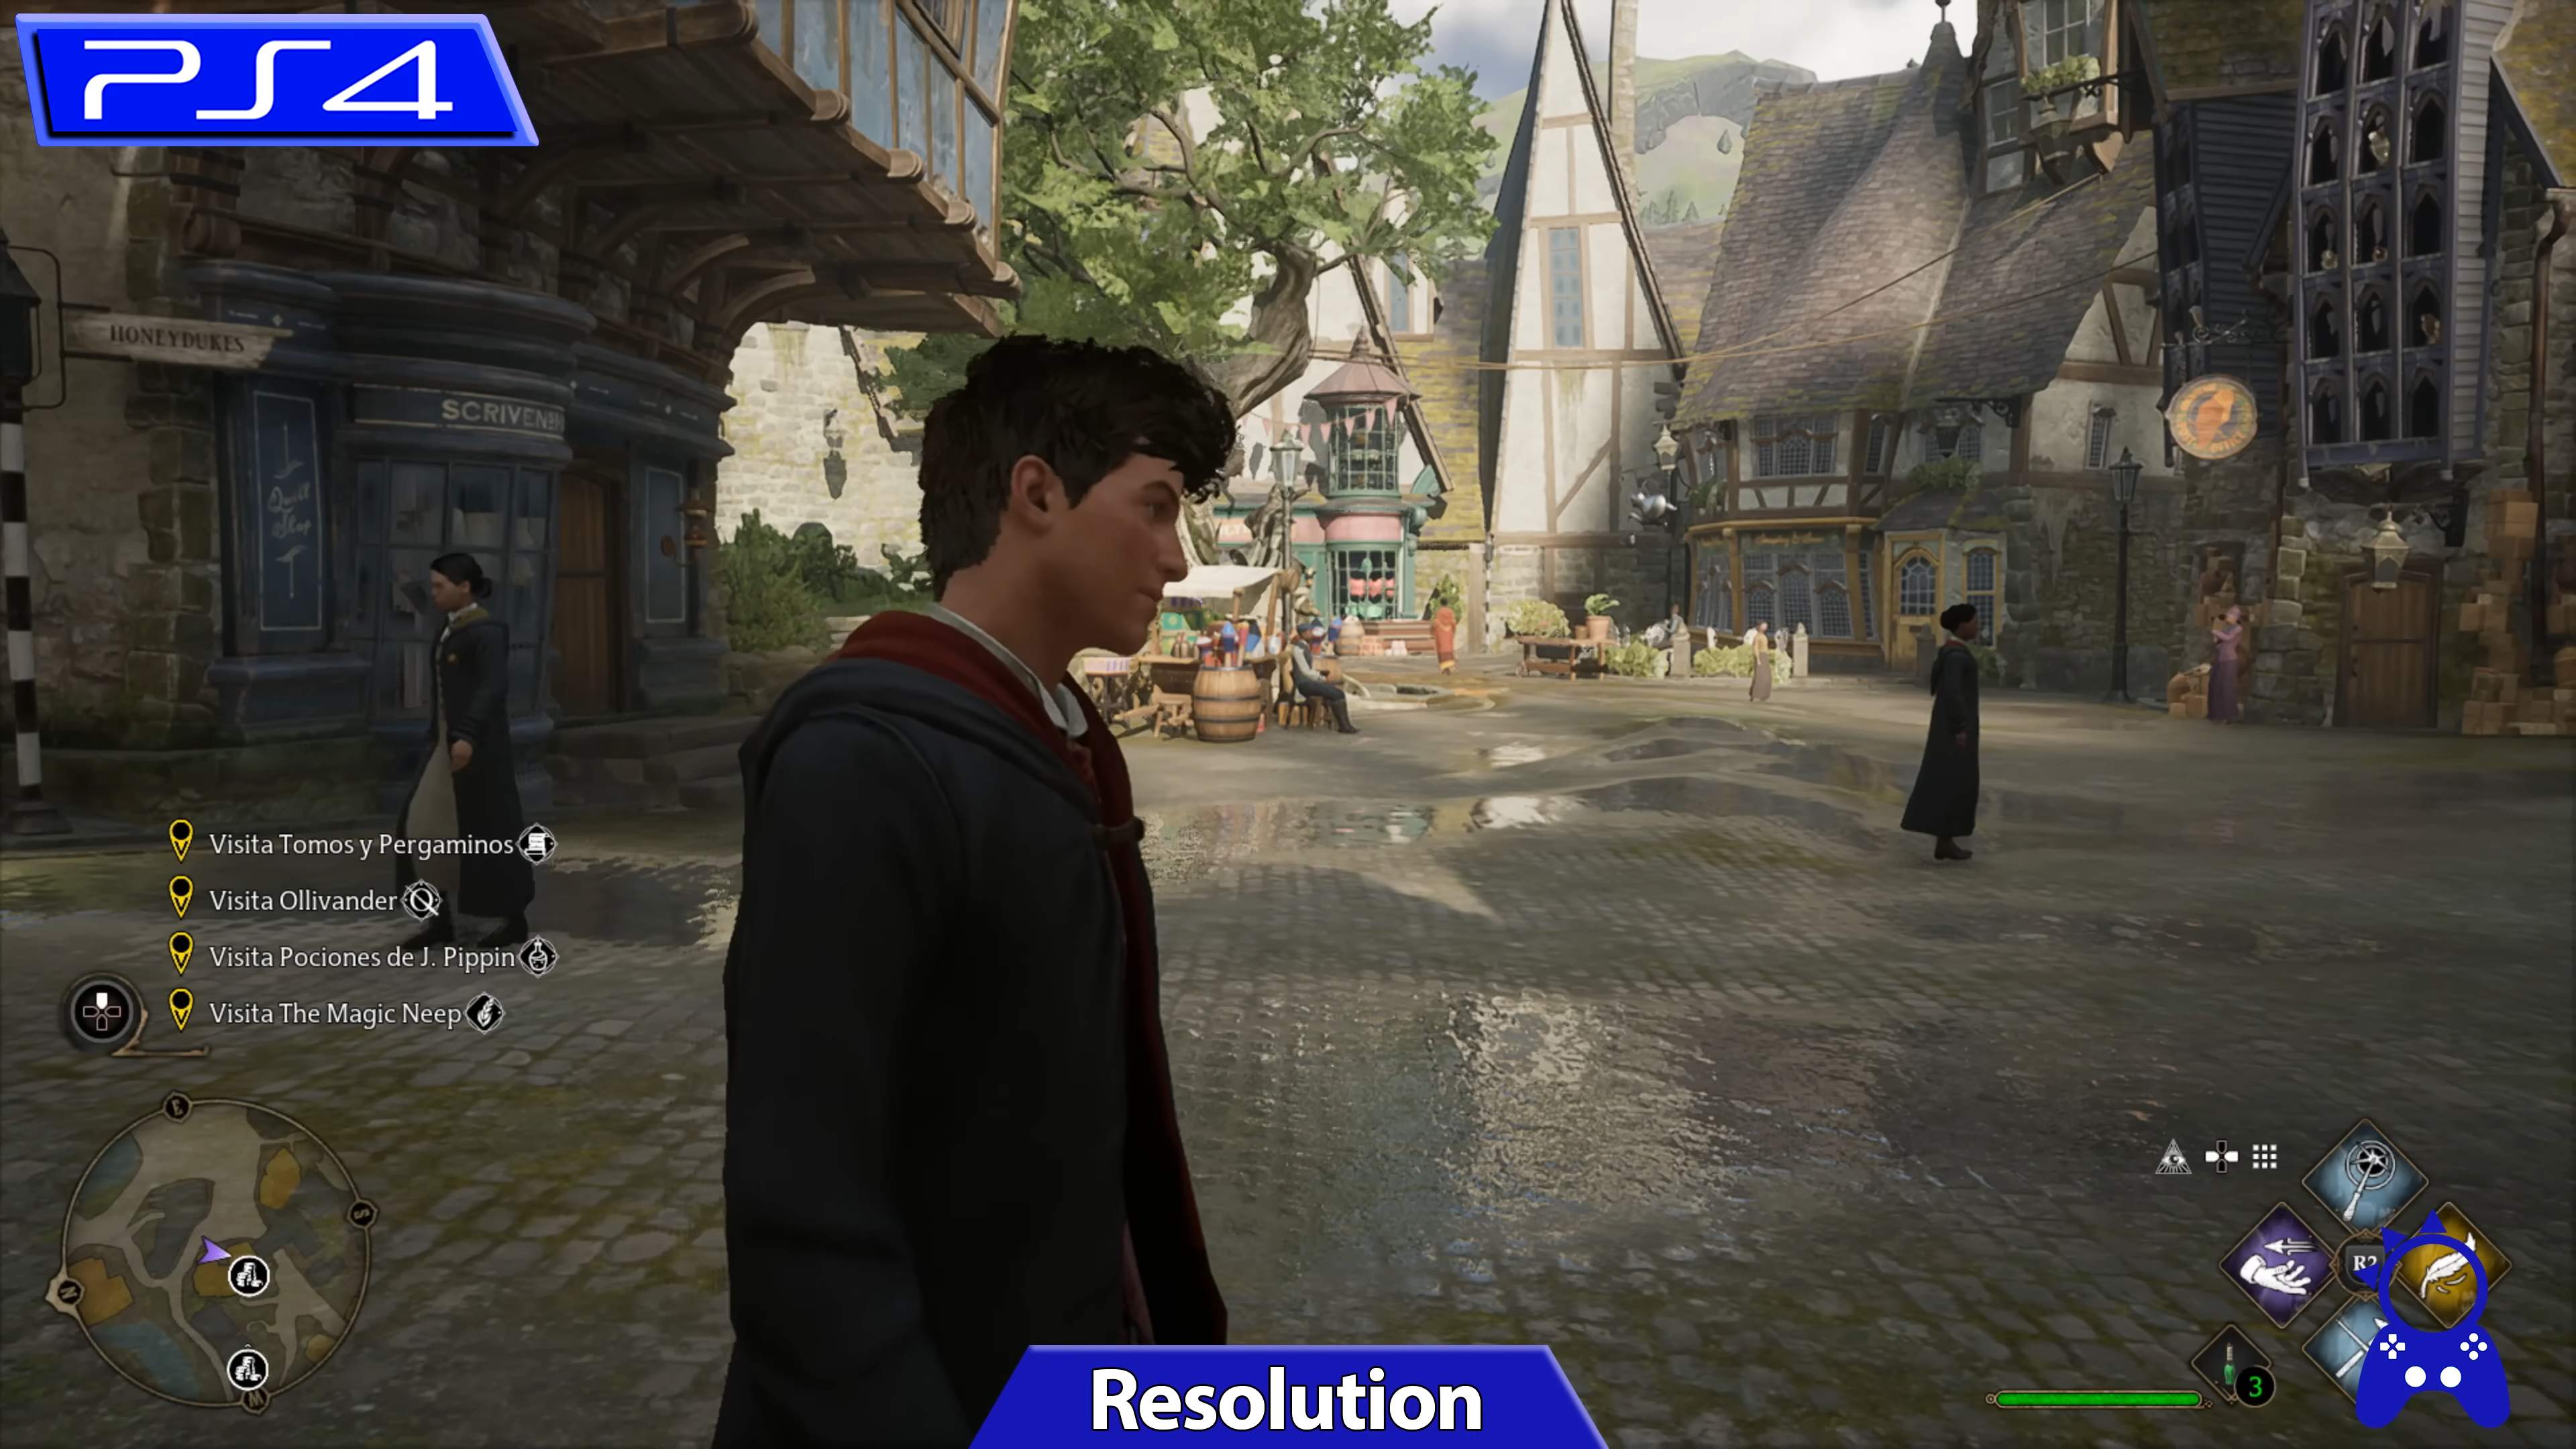 Hogwarts Legacy - Xbox series x s/x ou Xbox one mídia digital